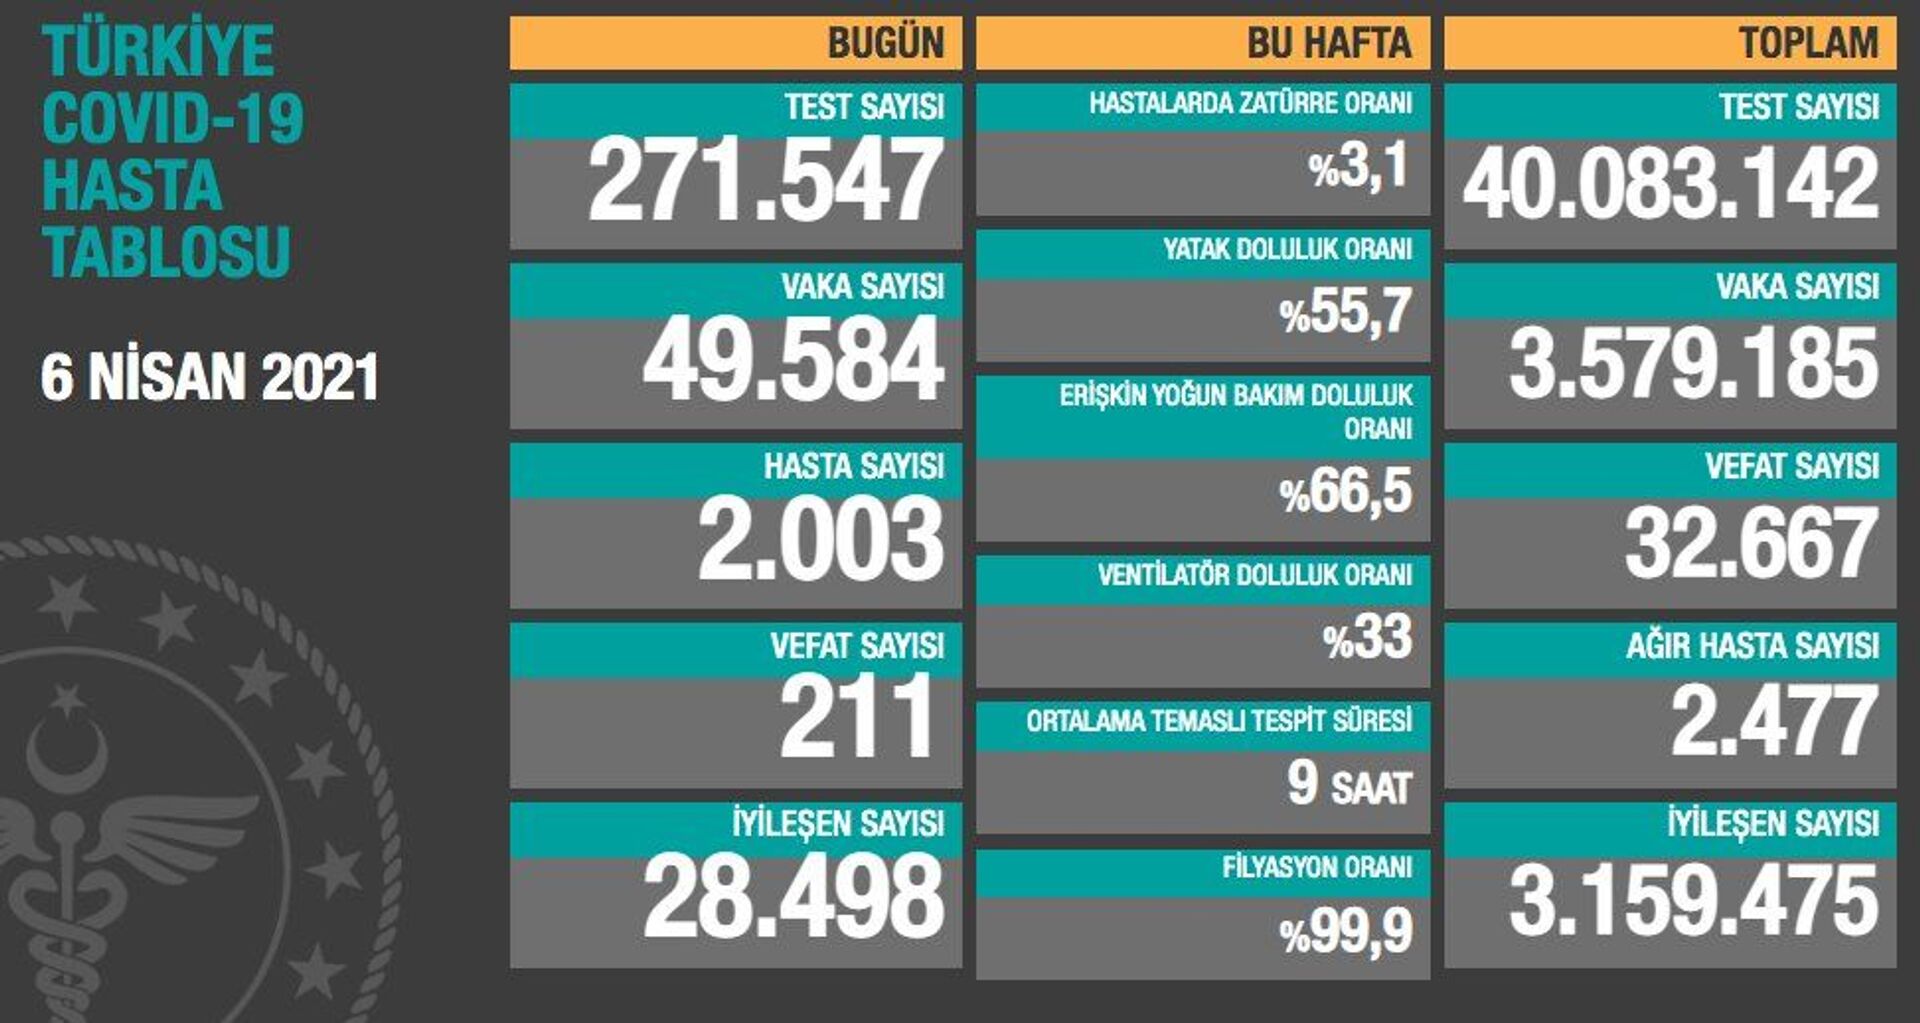 Türkiye'de son 24 saatte koronavirüsten 211 kişi hayatını kaybetti, 49 bin 584 kişinin testi pozitif çıktı - Sputnik Türkiye, 1920, 06.04.2021